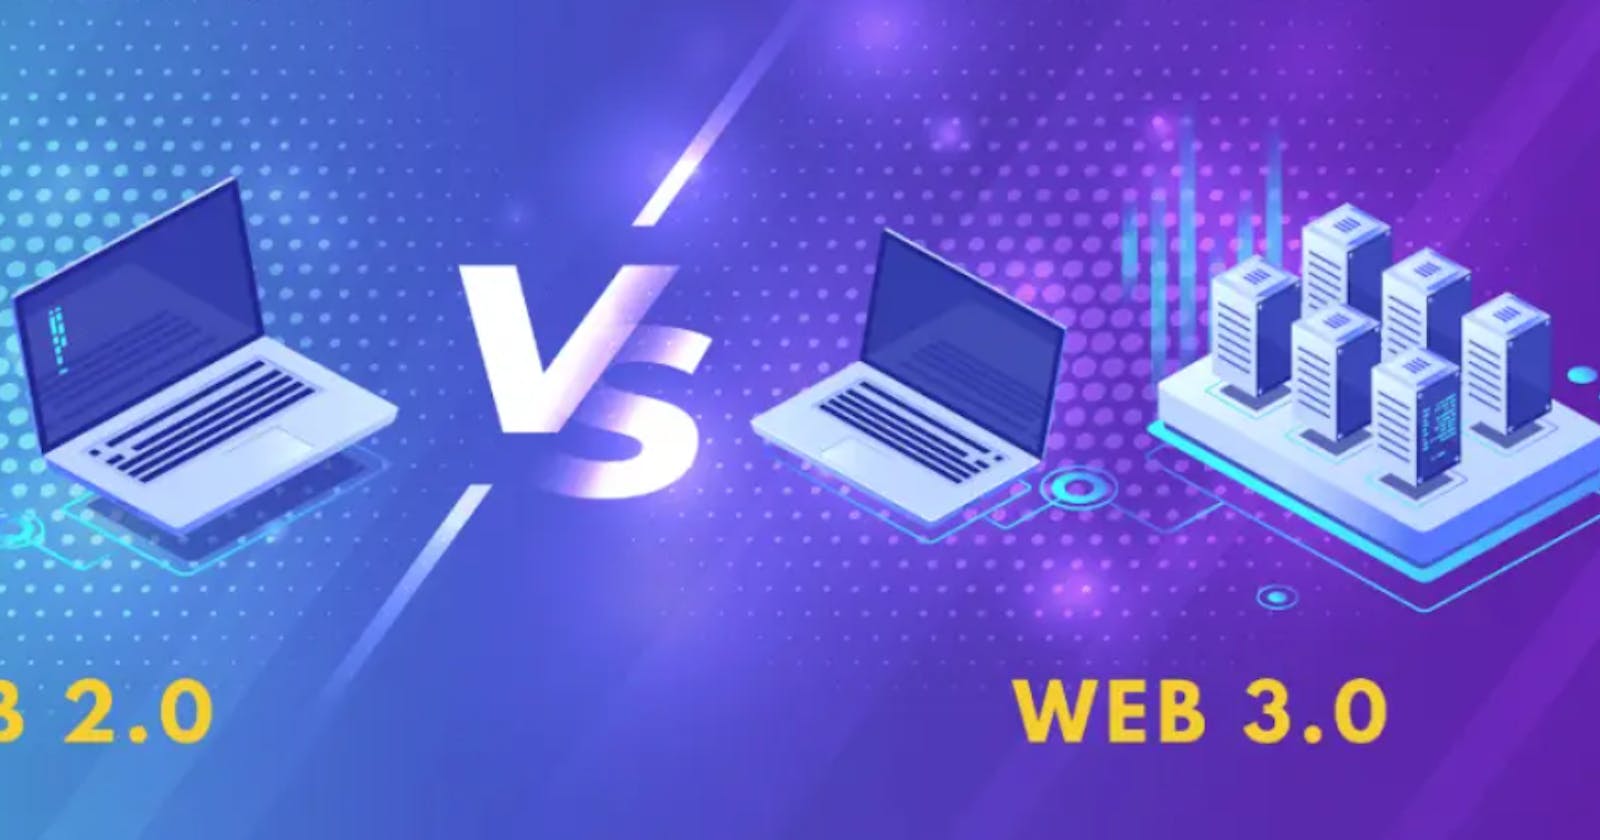 Web 2.0 Vs Web 3.0: the split in the middle